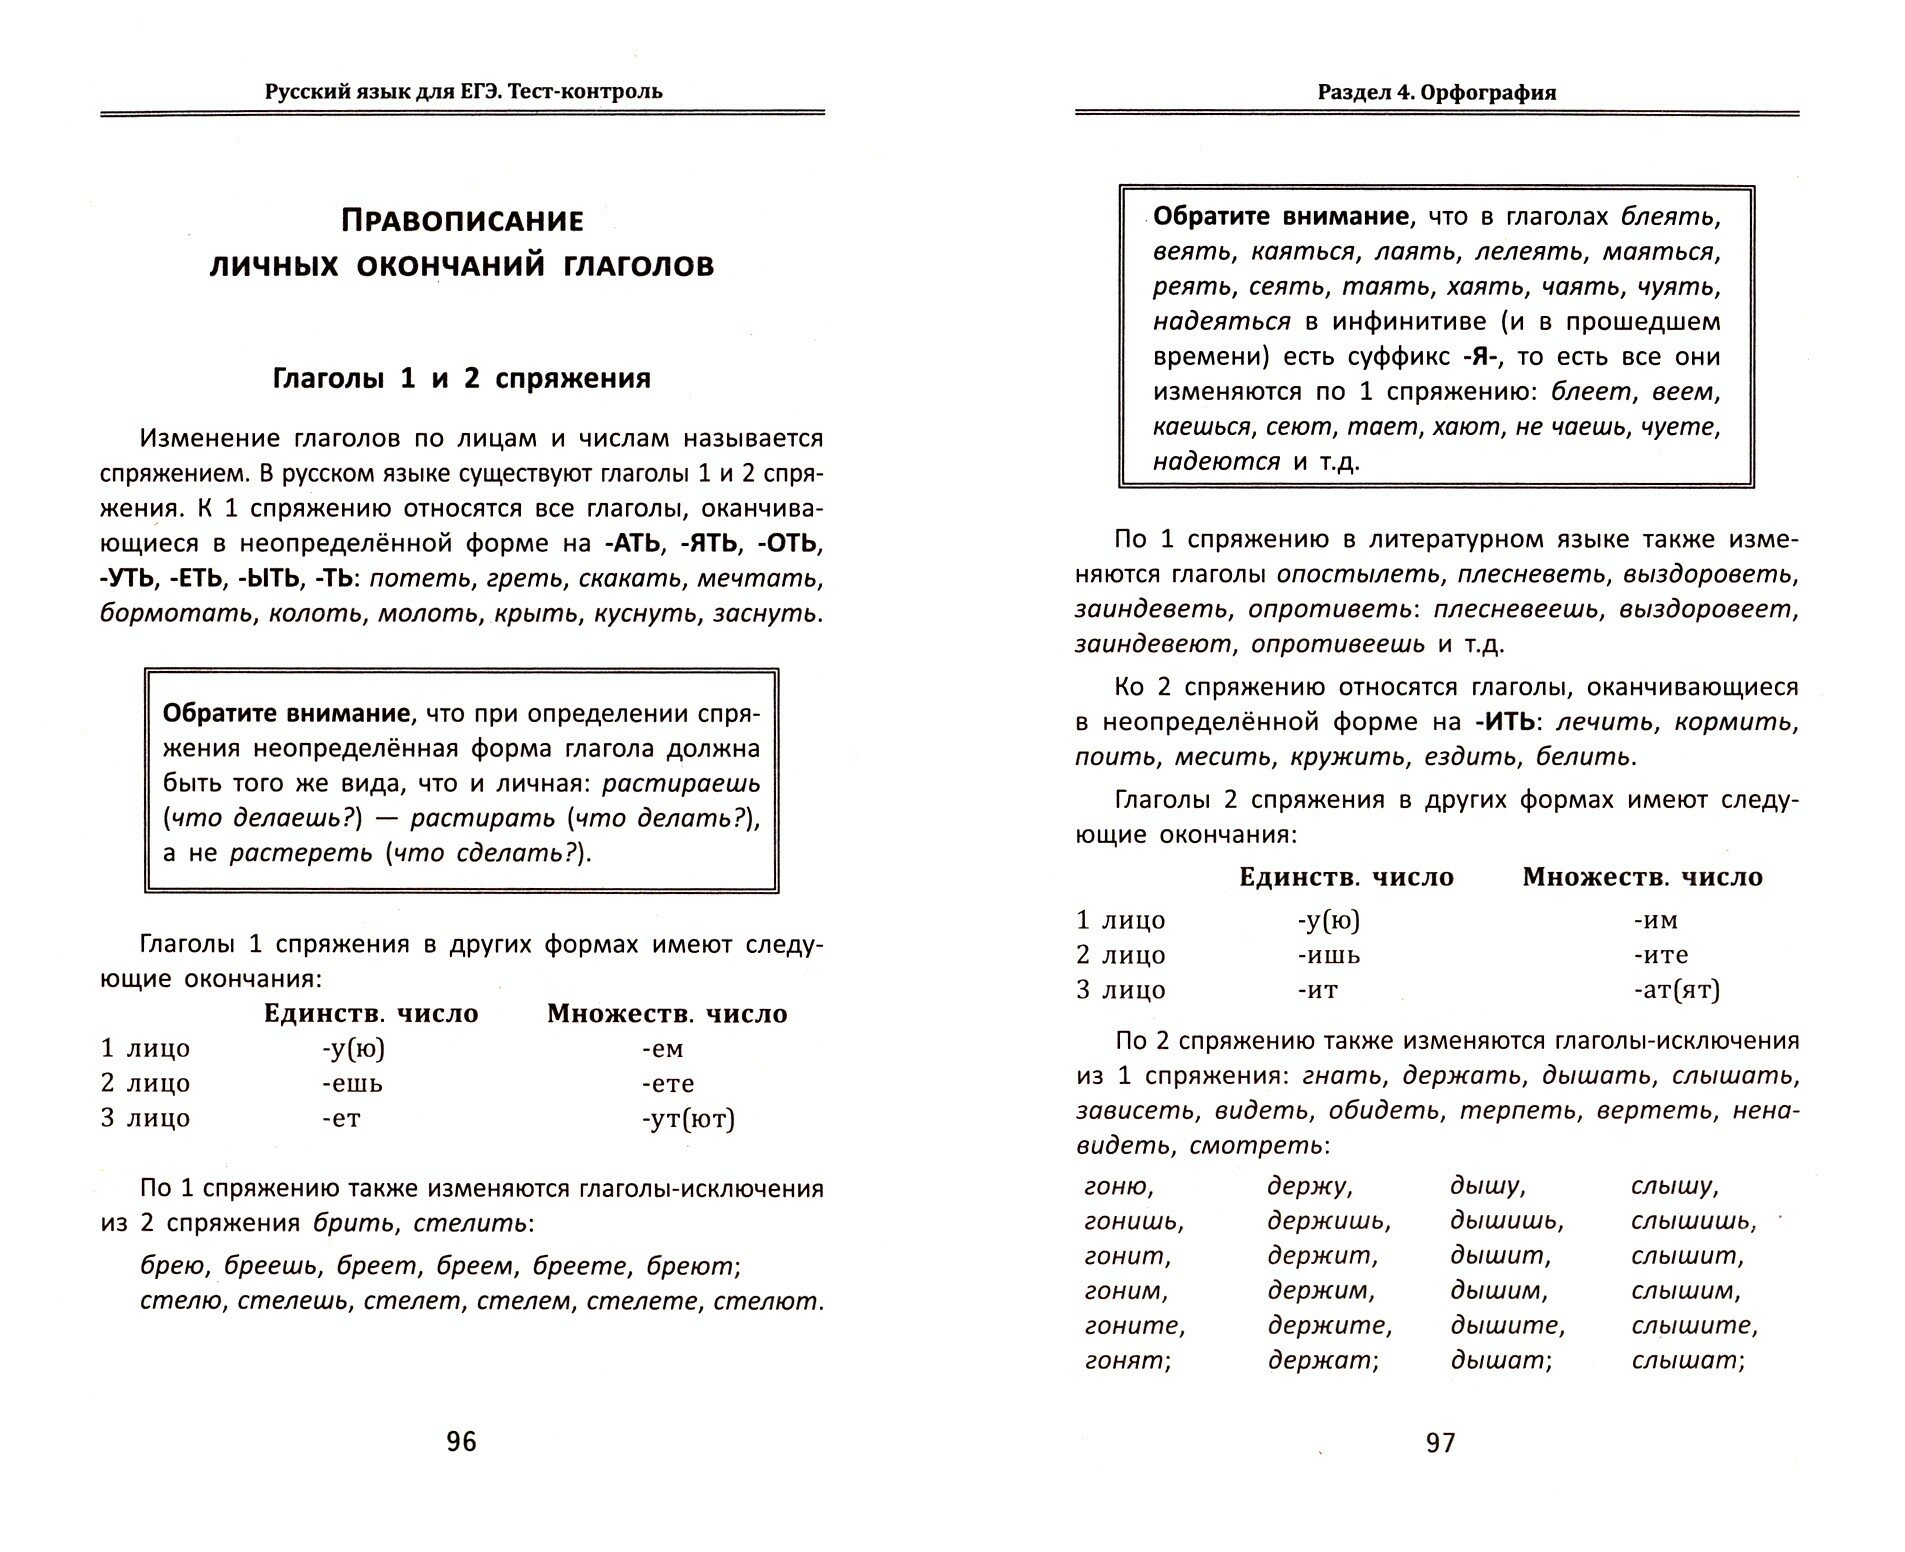 Русский язык для ЕГЭ. Тест-контроль - фото №2